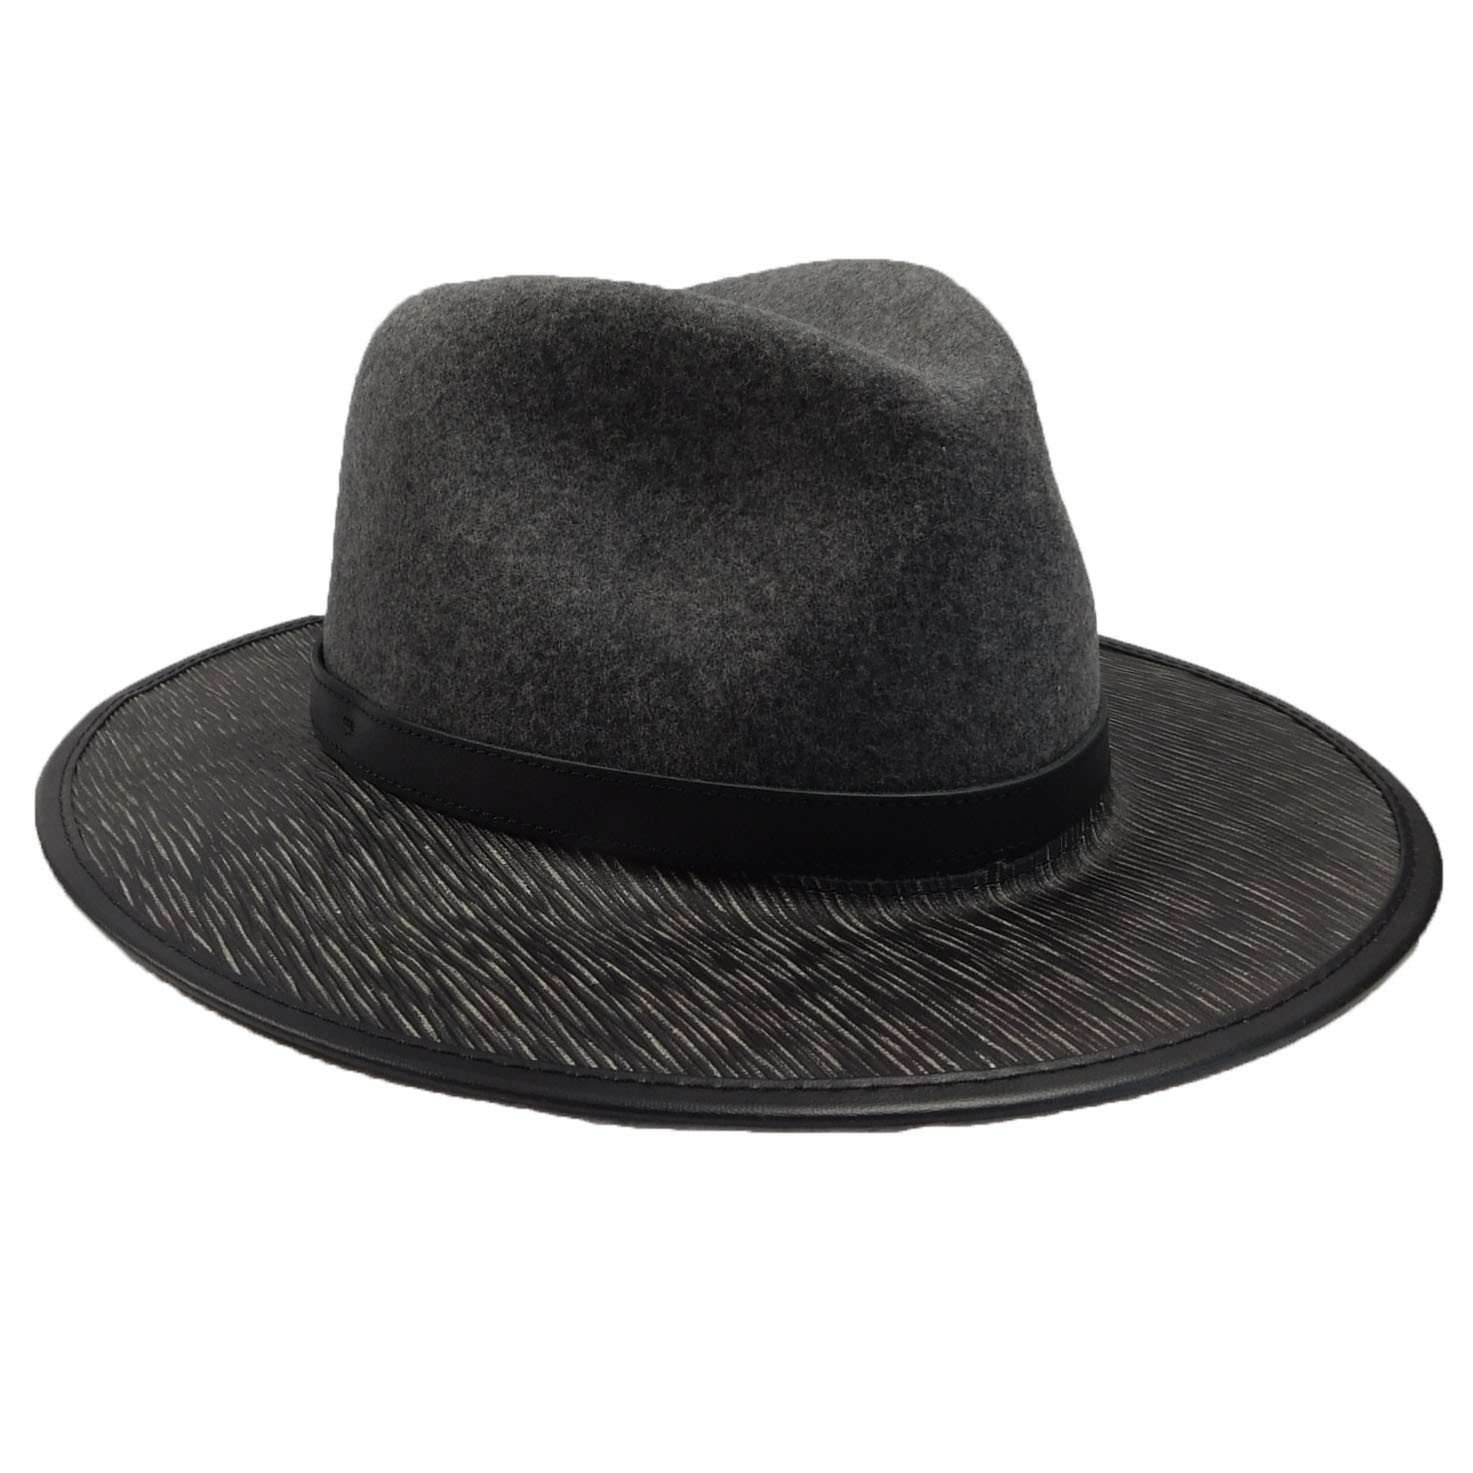 Summit Safari Wool and Leather Hat -Granite Safari Hat Head'N'Home Hats    